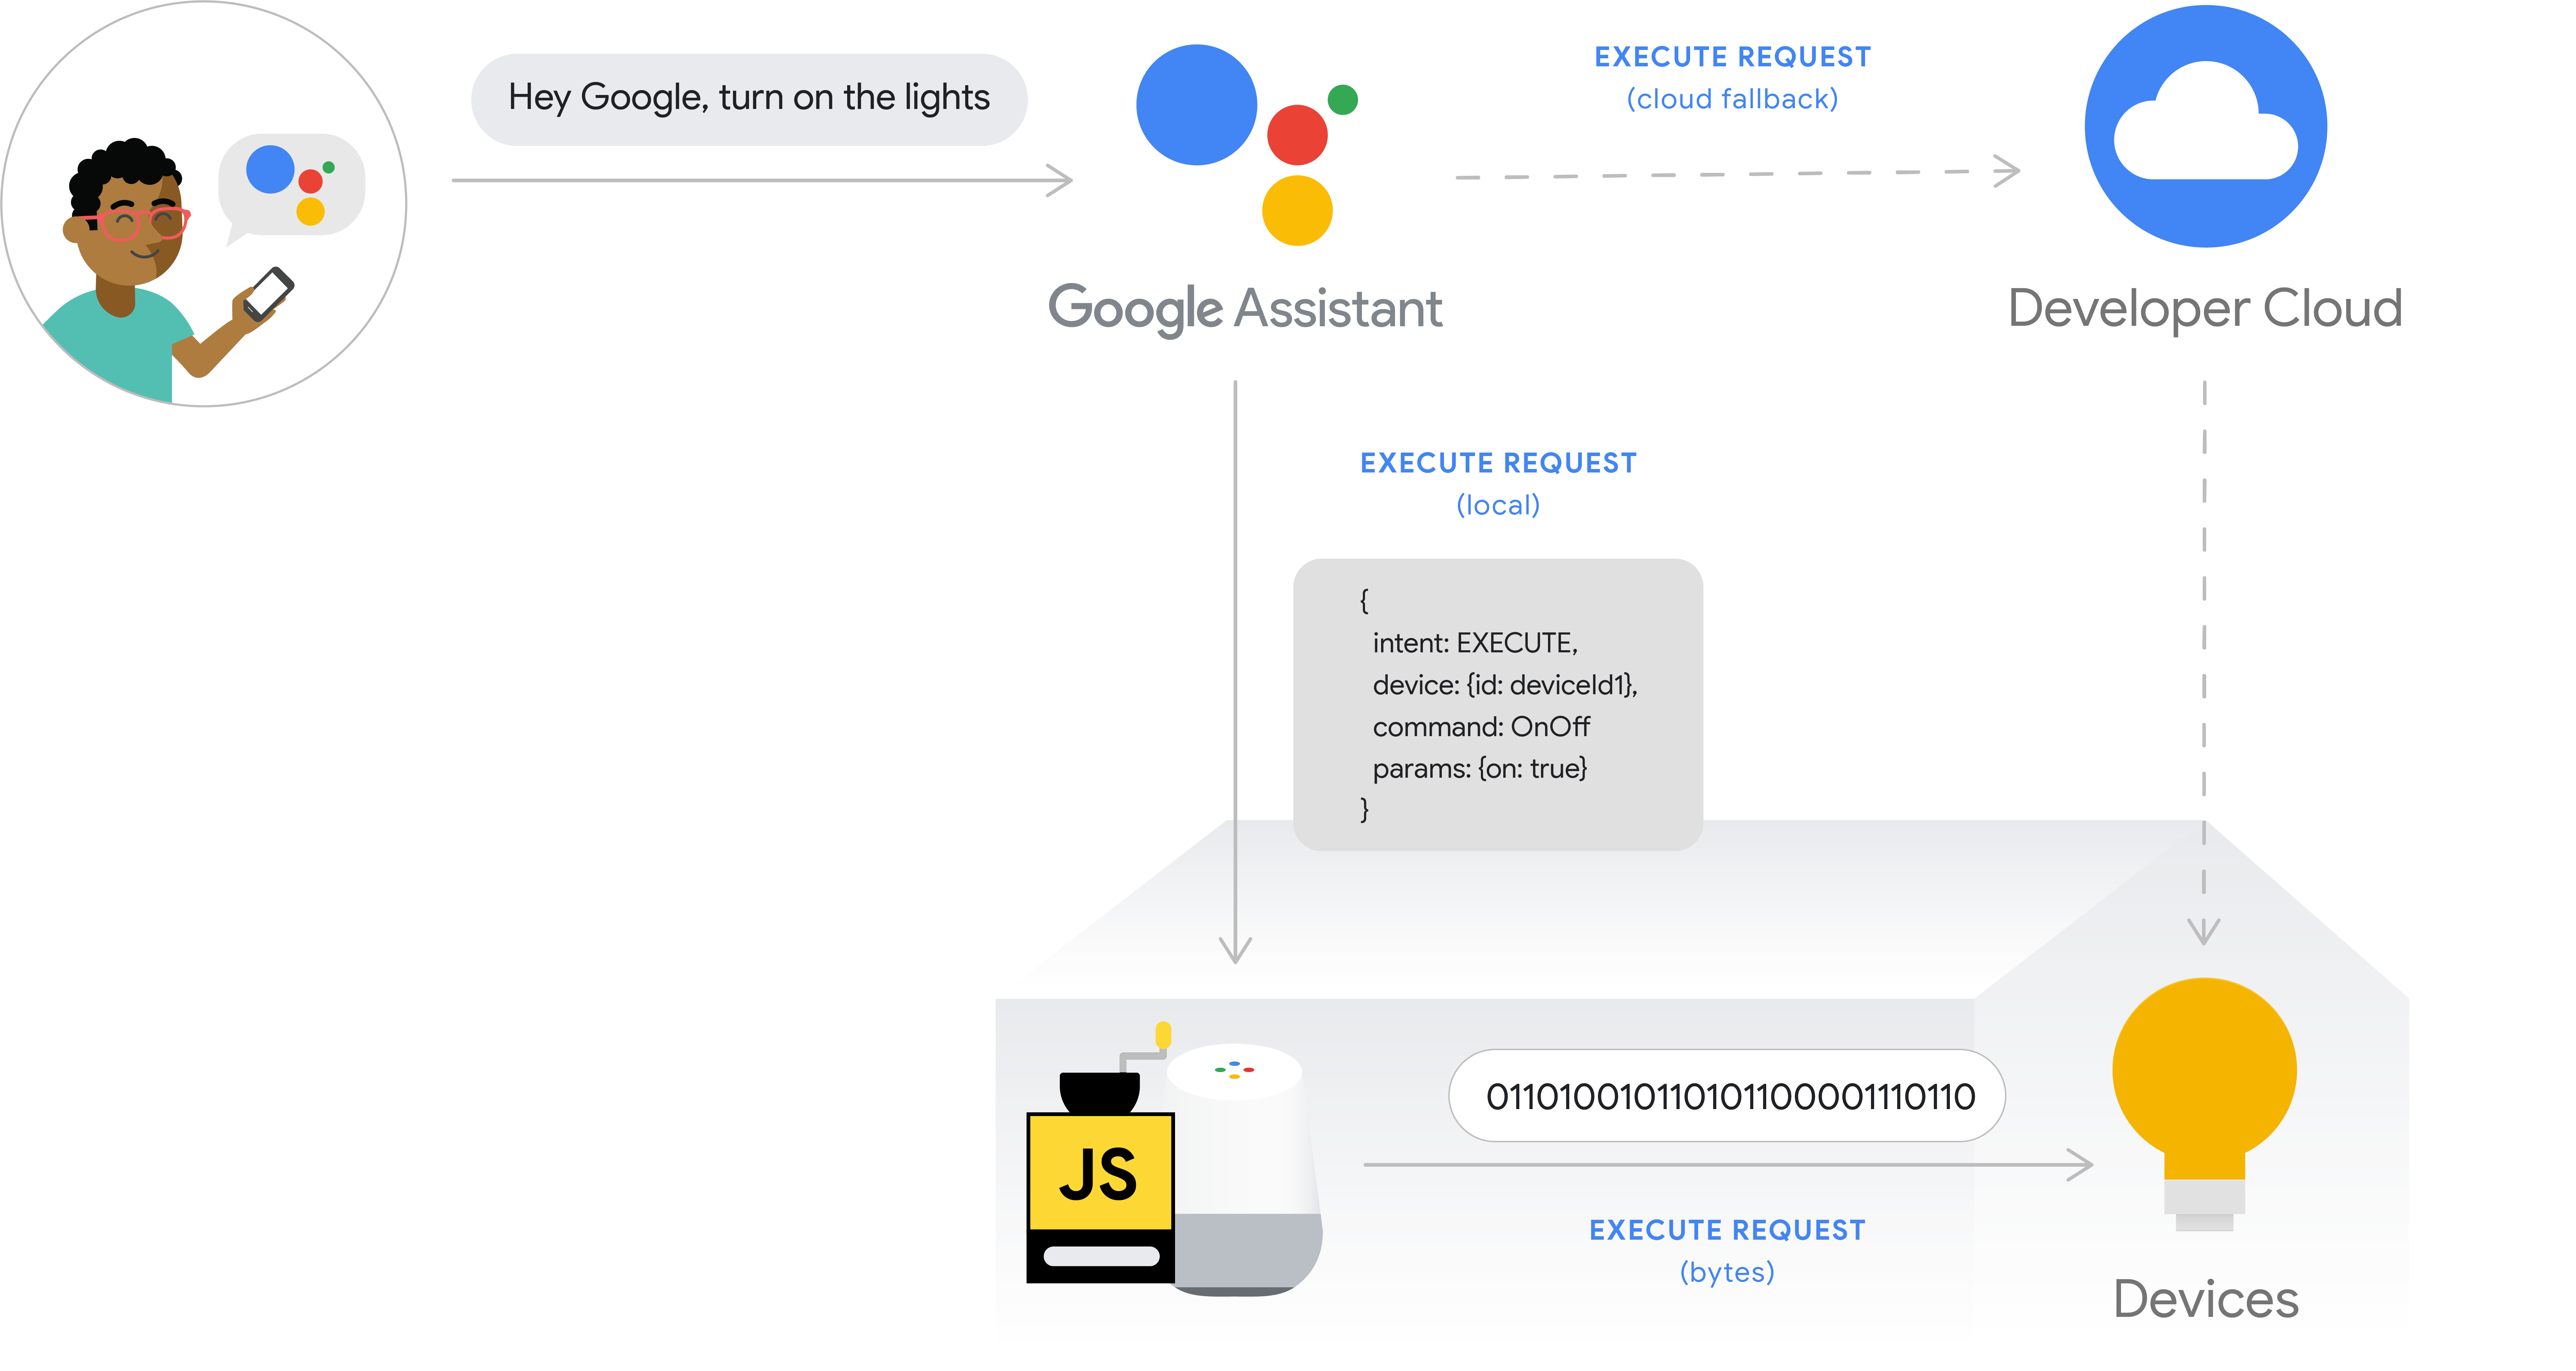 รูปนี้แสดงขั้นตอนการดําเนินการสําหรับการดําเนินการตามคําสั่งซื้อในพื้นที่ เส้นทางการดําเนินการจะแสดงความตั้งใจของผู้ใช้จากโทรศัพท์ด้วย Google Assistant จากนั้น Google Cloud จะประมวลผลความตั้งใจของผู้ใช้ จากนั้นอุปกรณ์จะทํางานภายในอุปกรณ์ Google Home และแสดงคําสั่งไปยังอุปกรณ์ฮับโดยตรงหรืออุปกรณ์โดยตรง ระบบคลาวด์ของนักพัฒนาซอฟต์แวร์พร้อมให้ใช้งานเป็นตัวเลือกสํารองสําหรับระบบคลาวด์